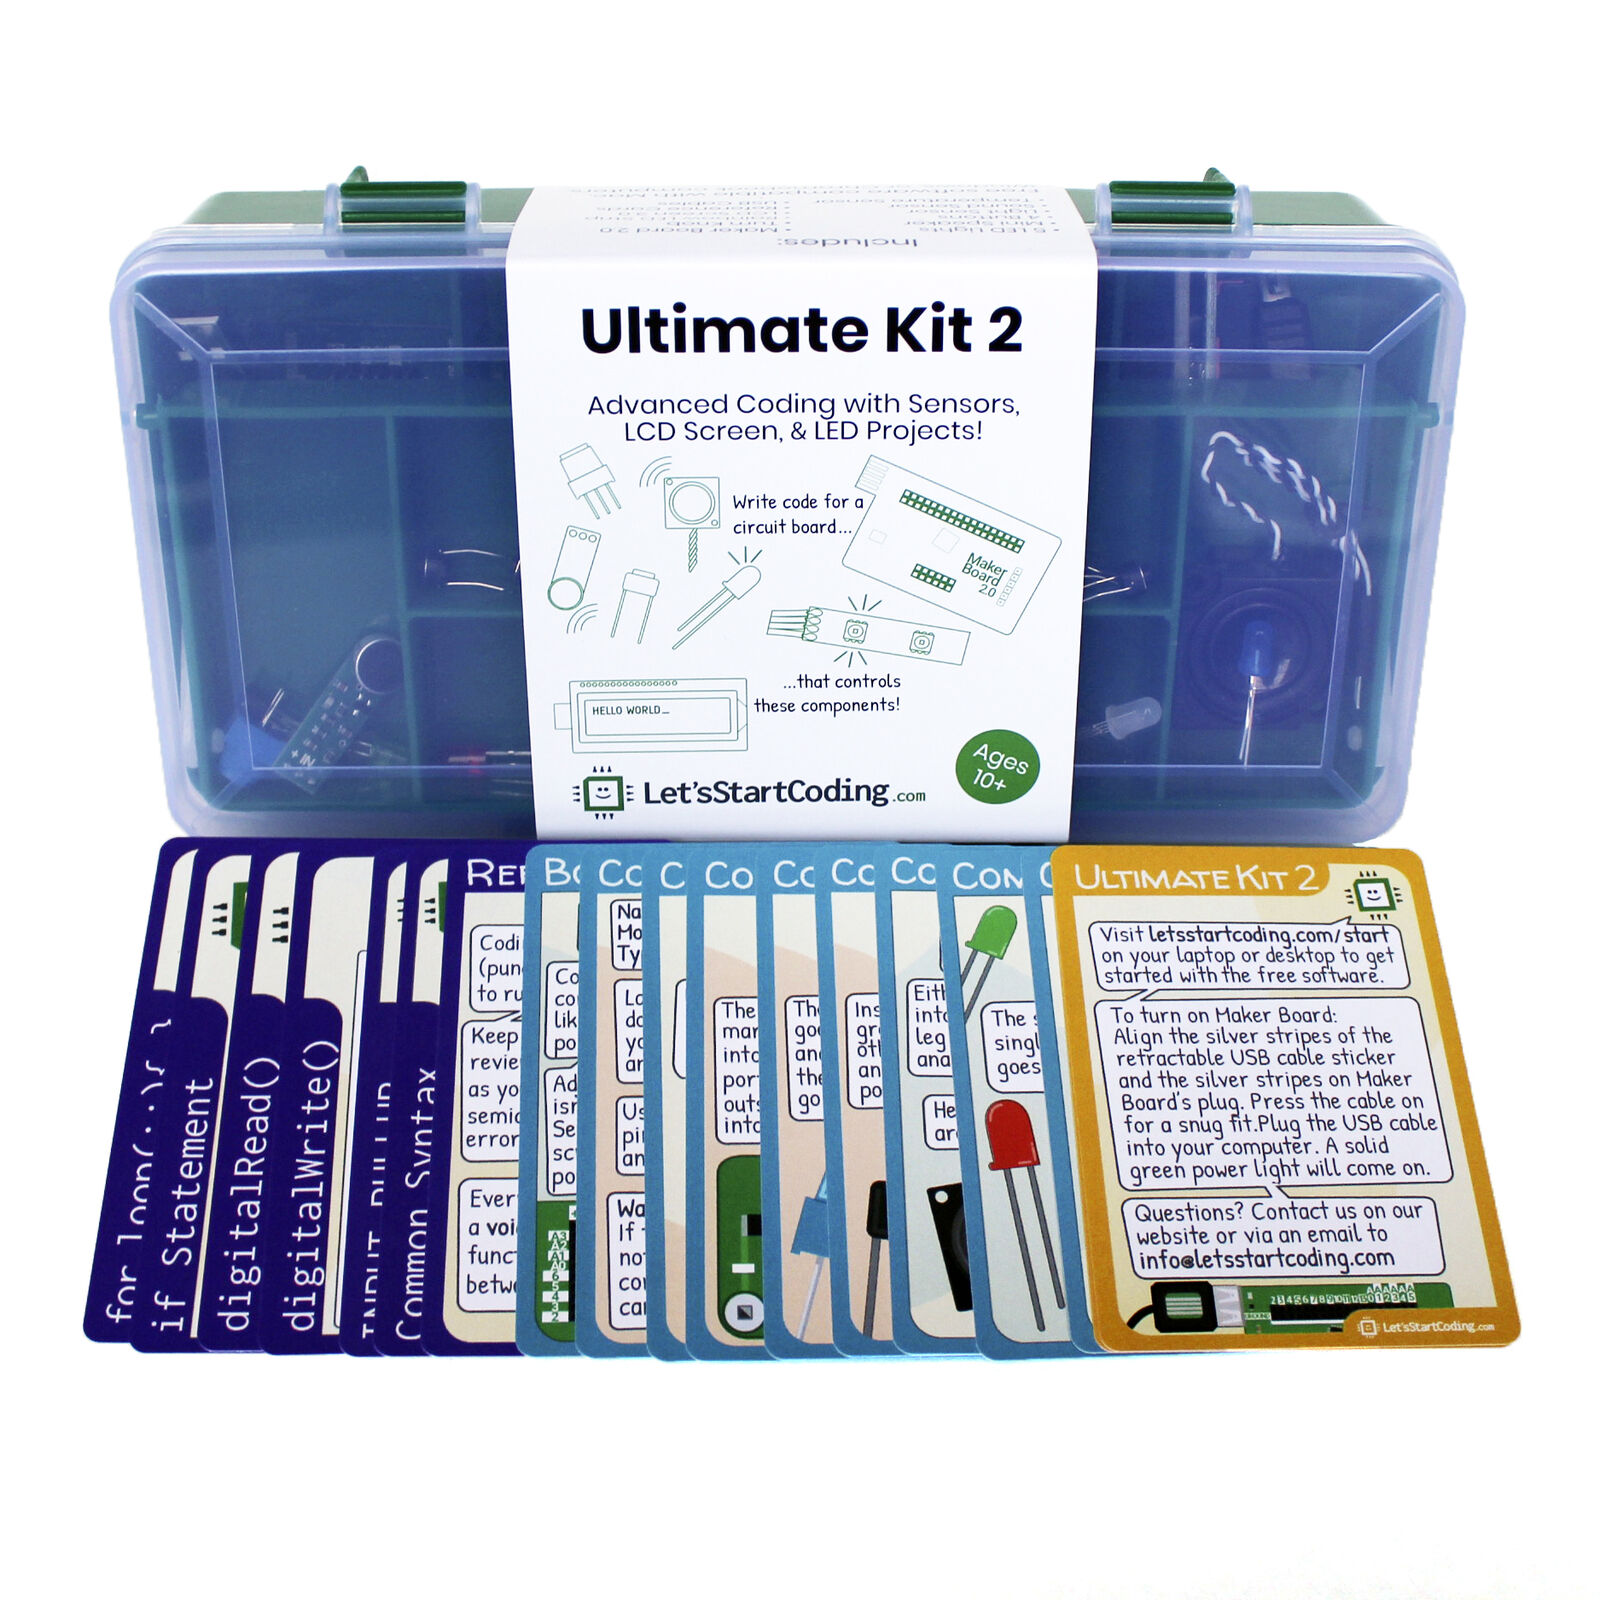 Ultimate Kit 2 : Coding & Stem Kit For Boys & Girls 8-12 From Let's Start Coding